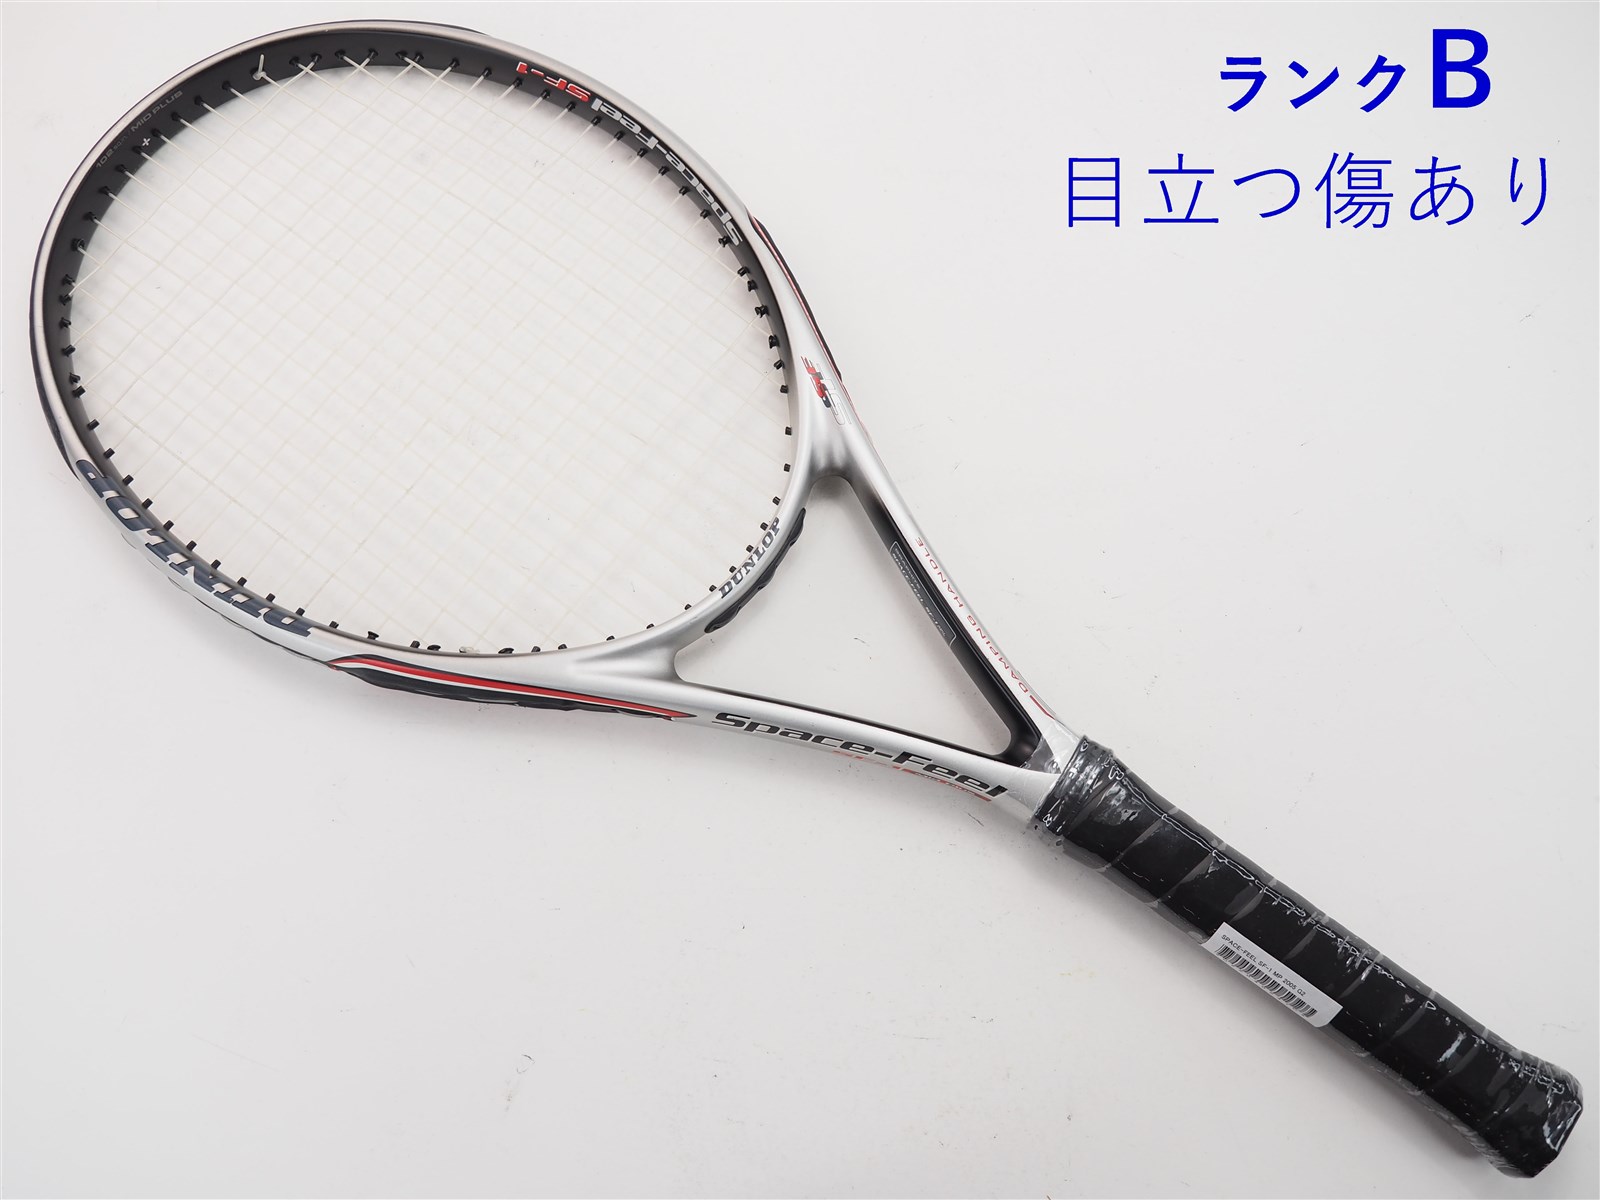 テニスラケット ダンロップ スペースフィール SF-1 MP (G2